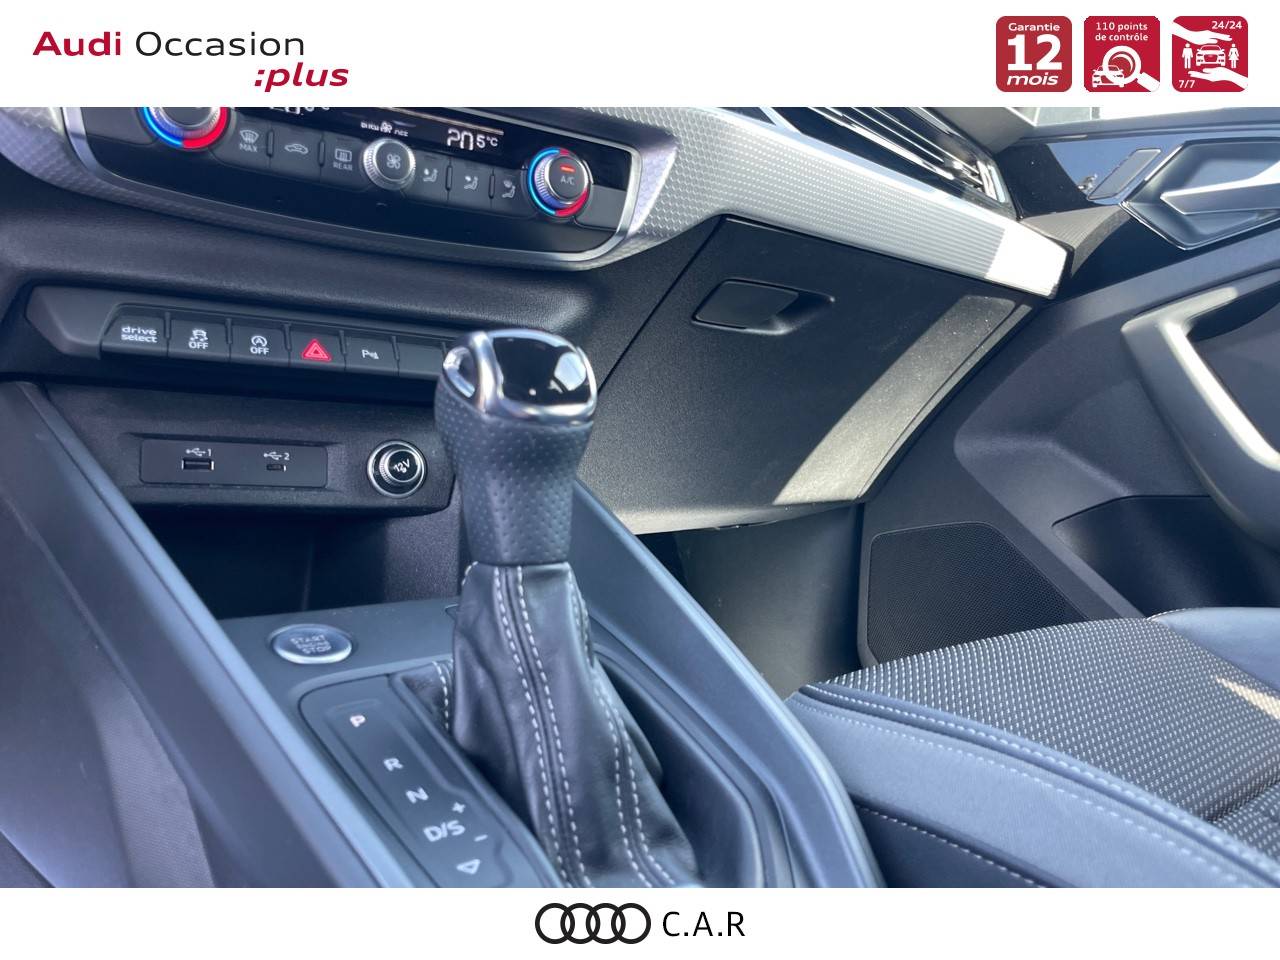 Ensemble de pédales d'origine Audi A1 A3 Q2 TT pour boîte de vitesses  manuelle, accessoires